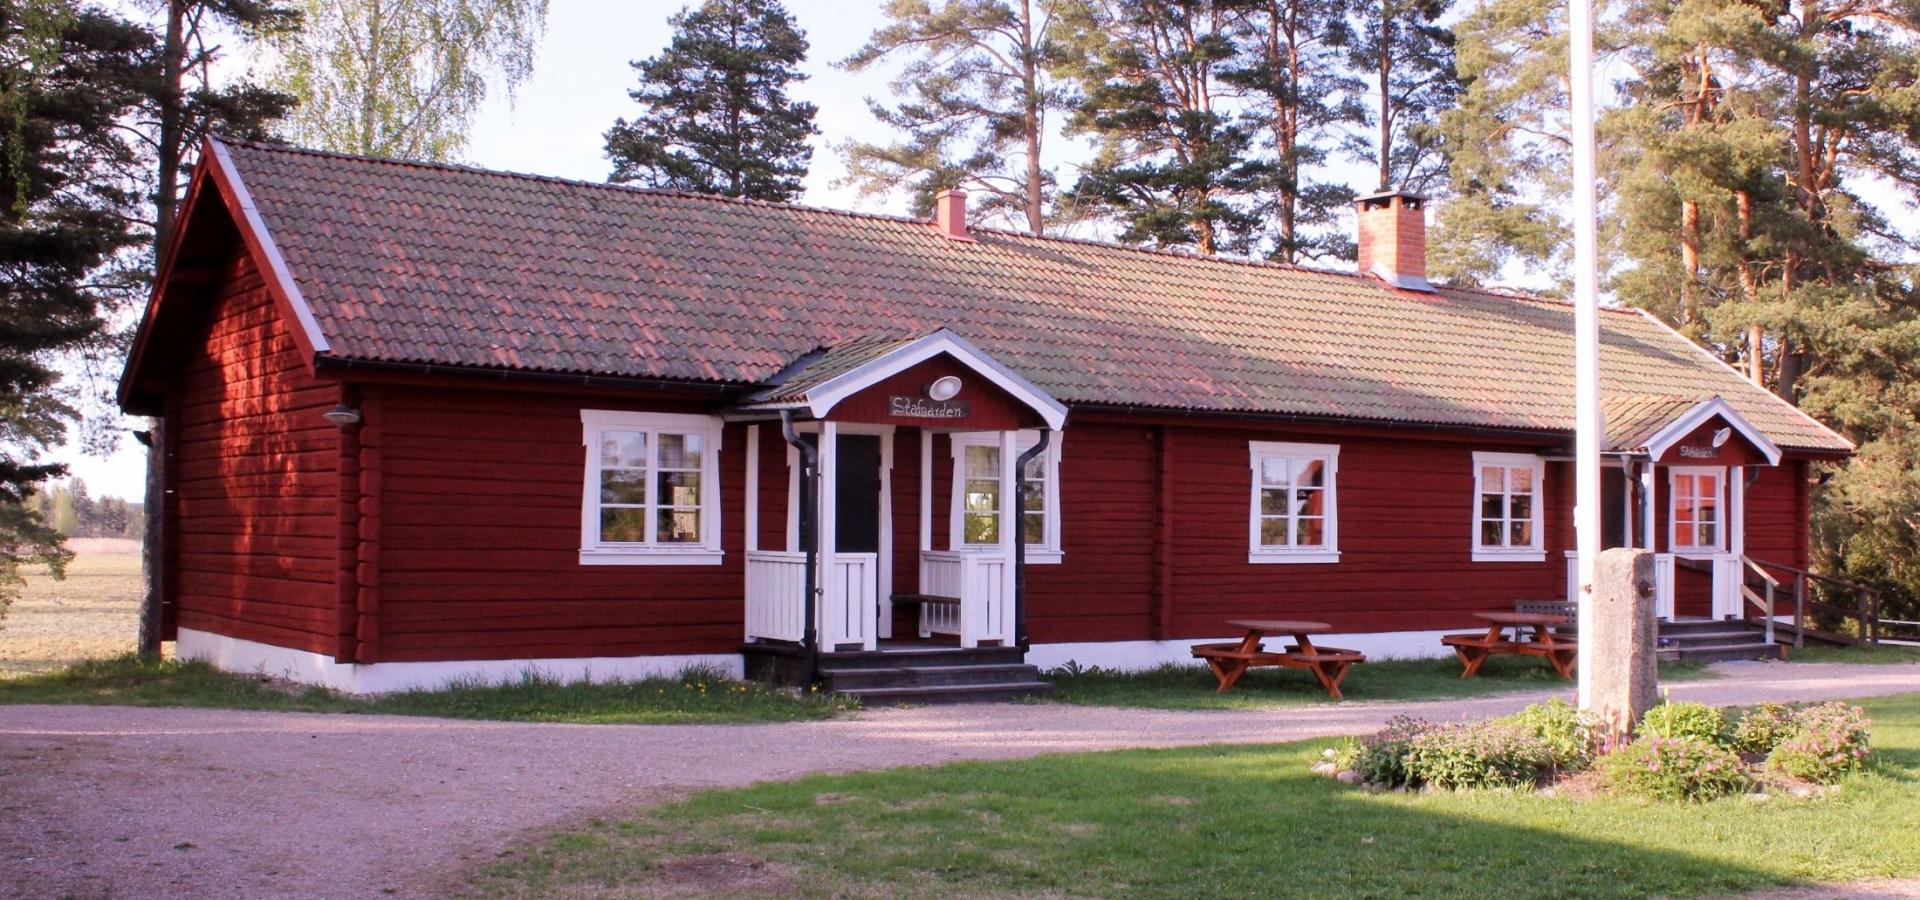 Stavgården är en kopia av en parstuga från byn Stav.
Lokalen är en trevlig festlokal som hyrs ut till medlemmar.